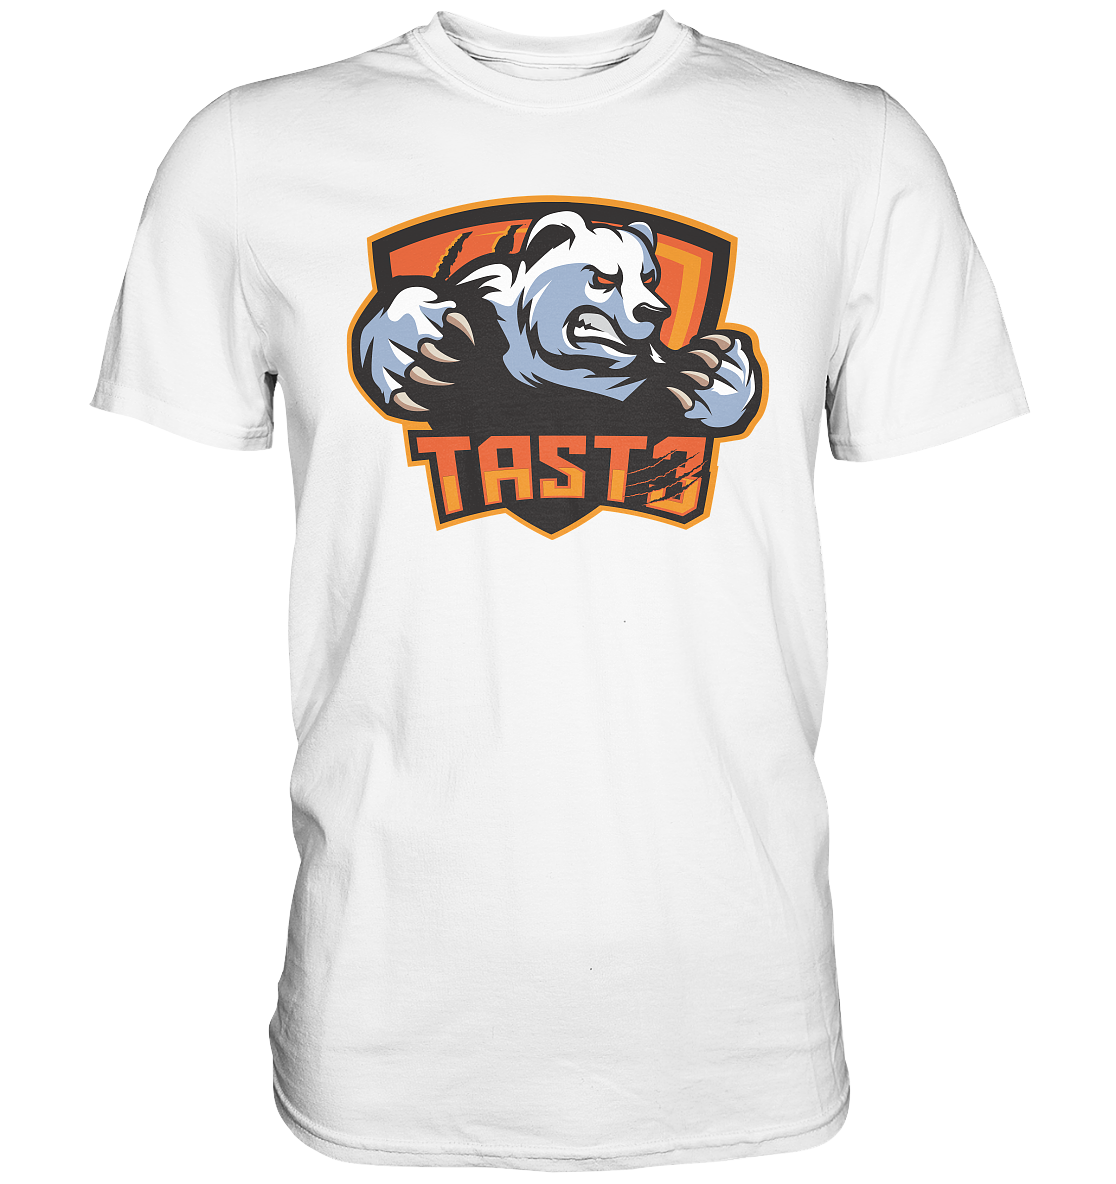 TAST3 ESPORTS - Basic Shirt